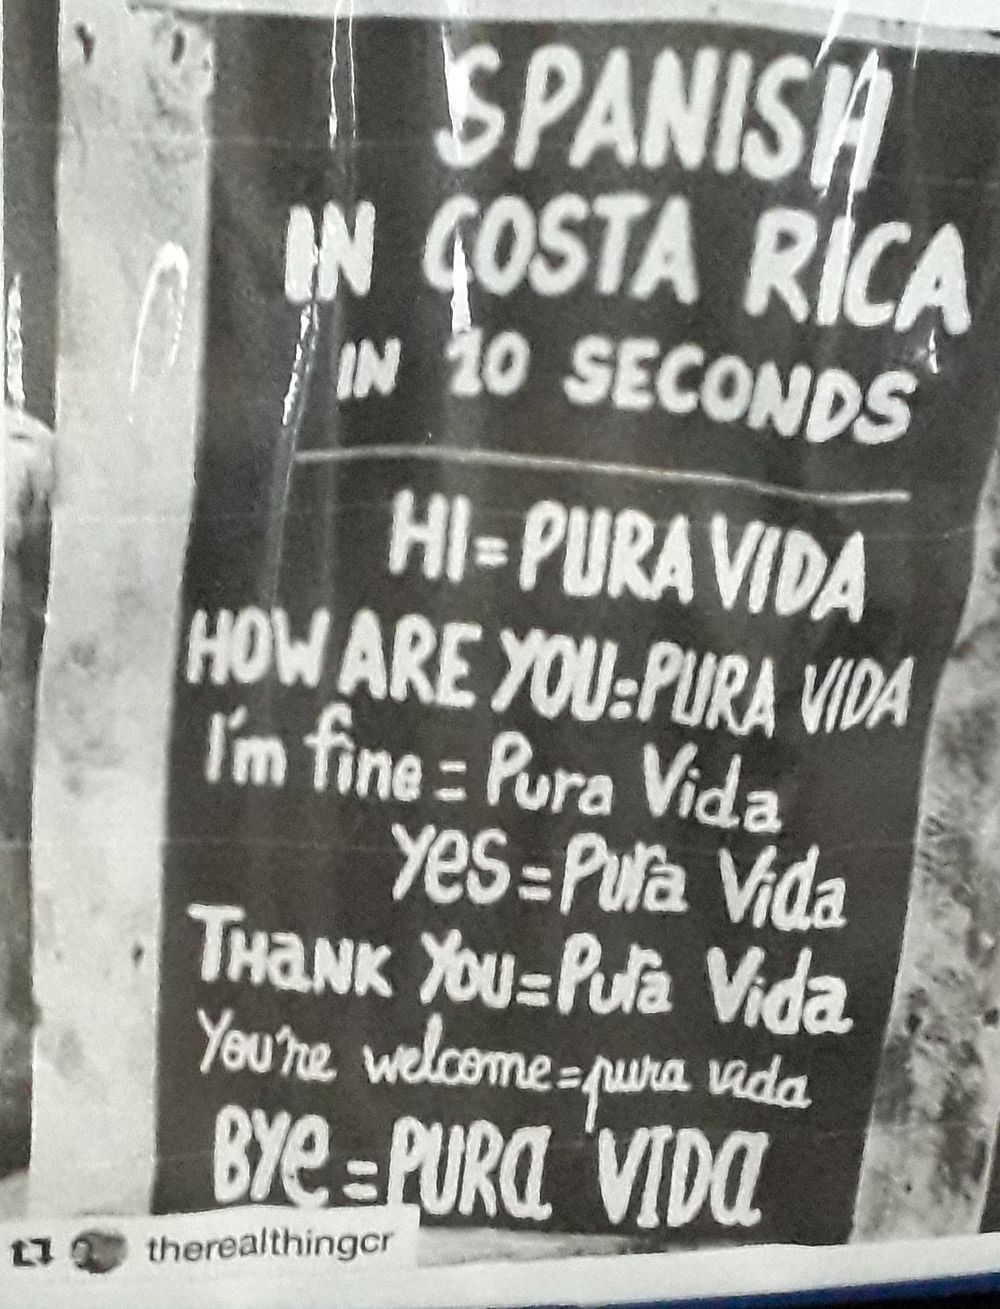 Re: Notre voyage (en avril 2019...) au Costa Rica - nicoflo123